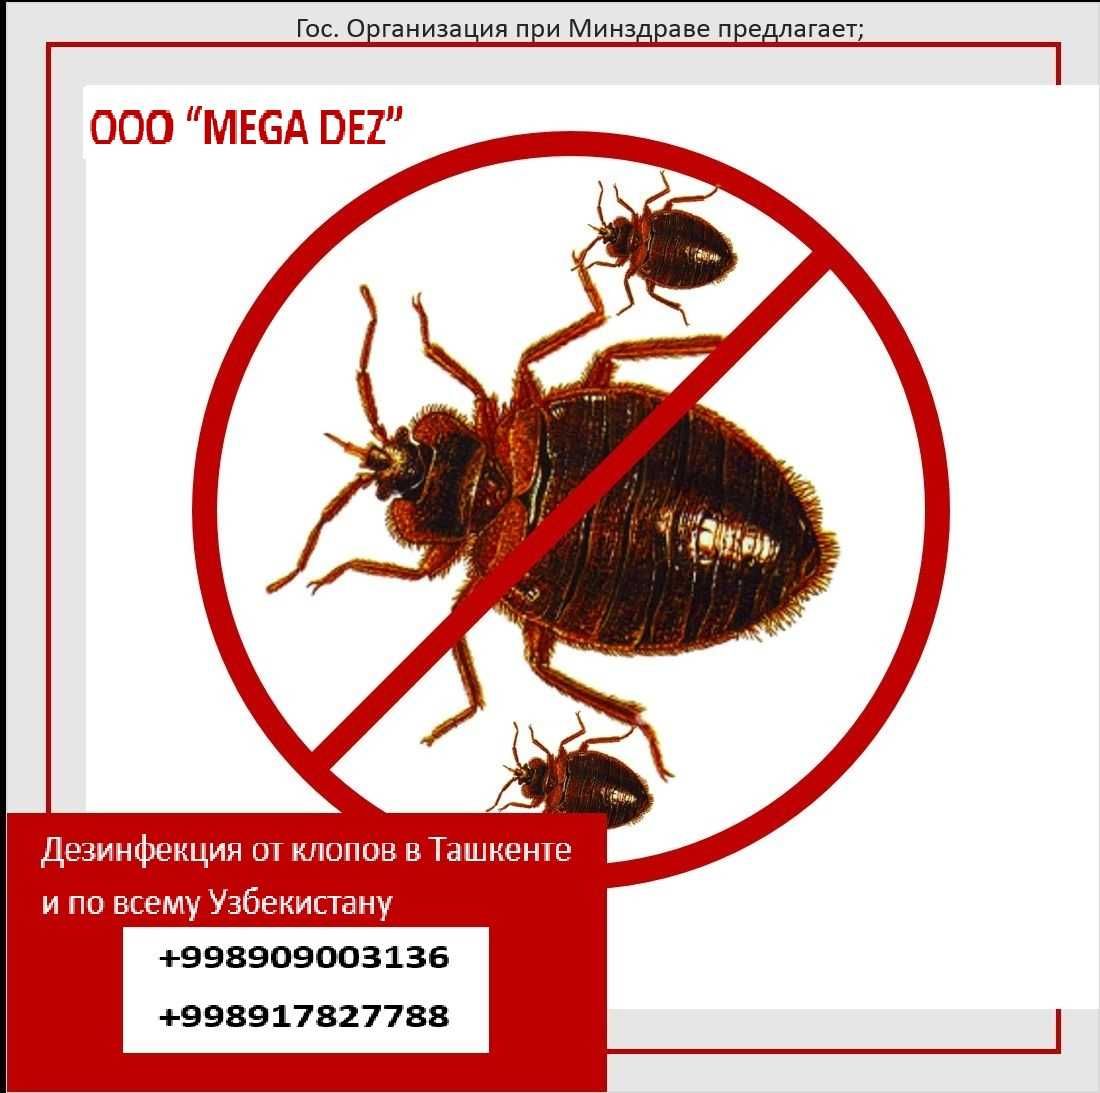 OOO “MEGA DEZ” быстро избавит Вас от всех грызунов и насекомых!!!